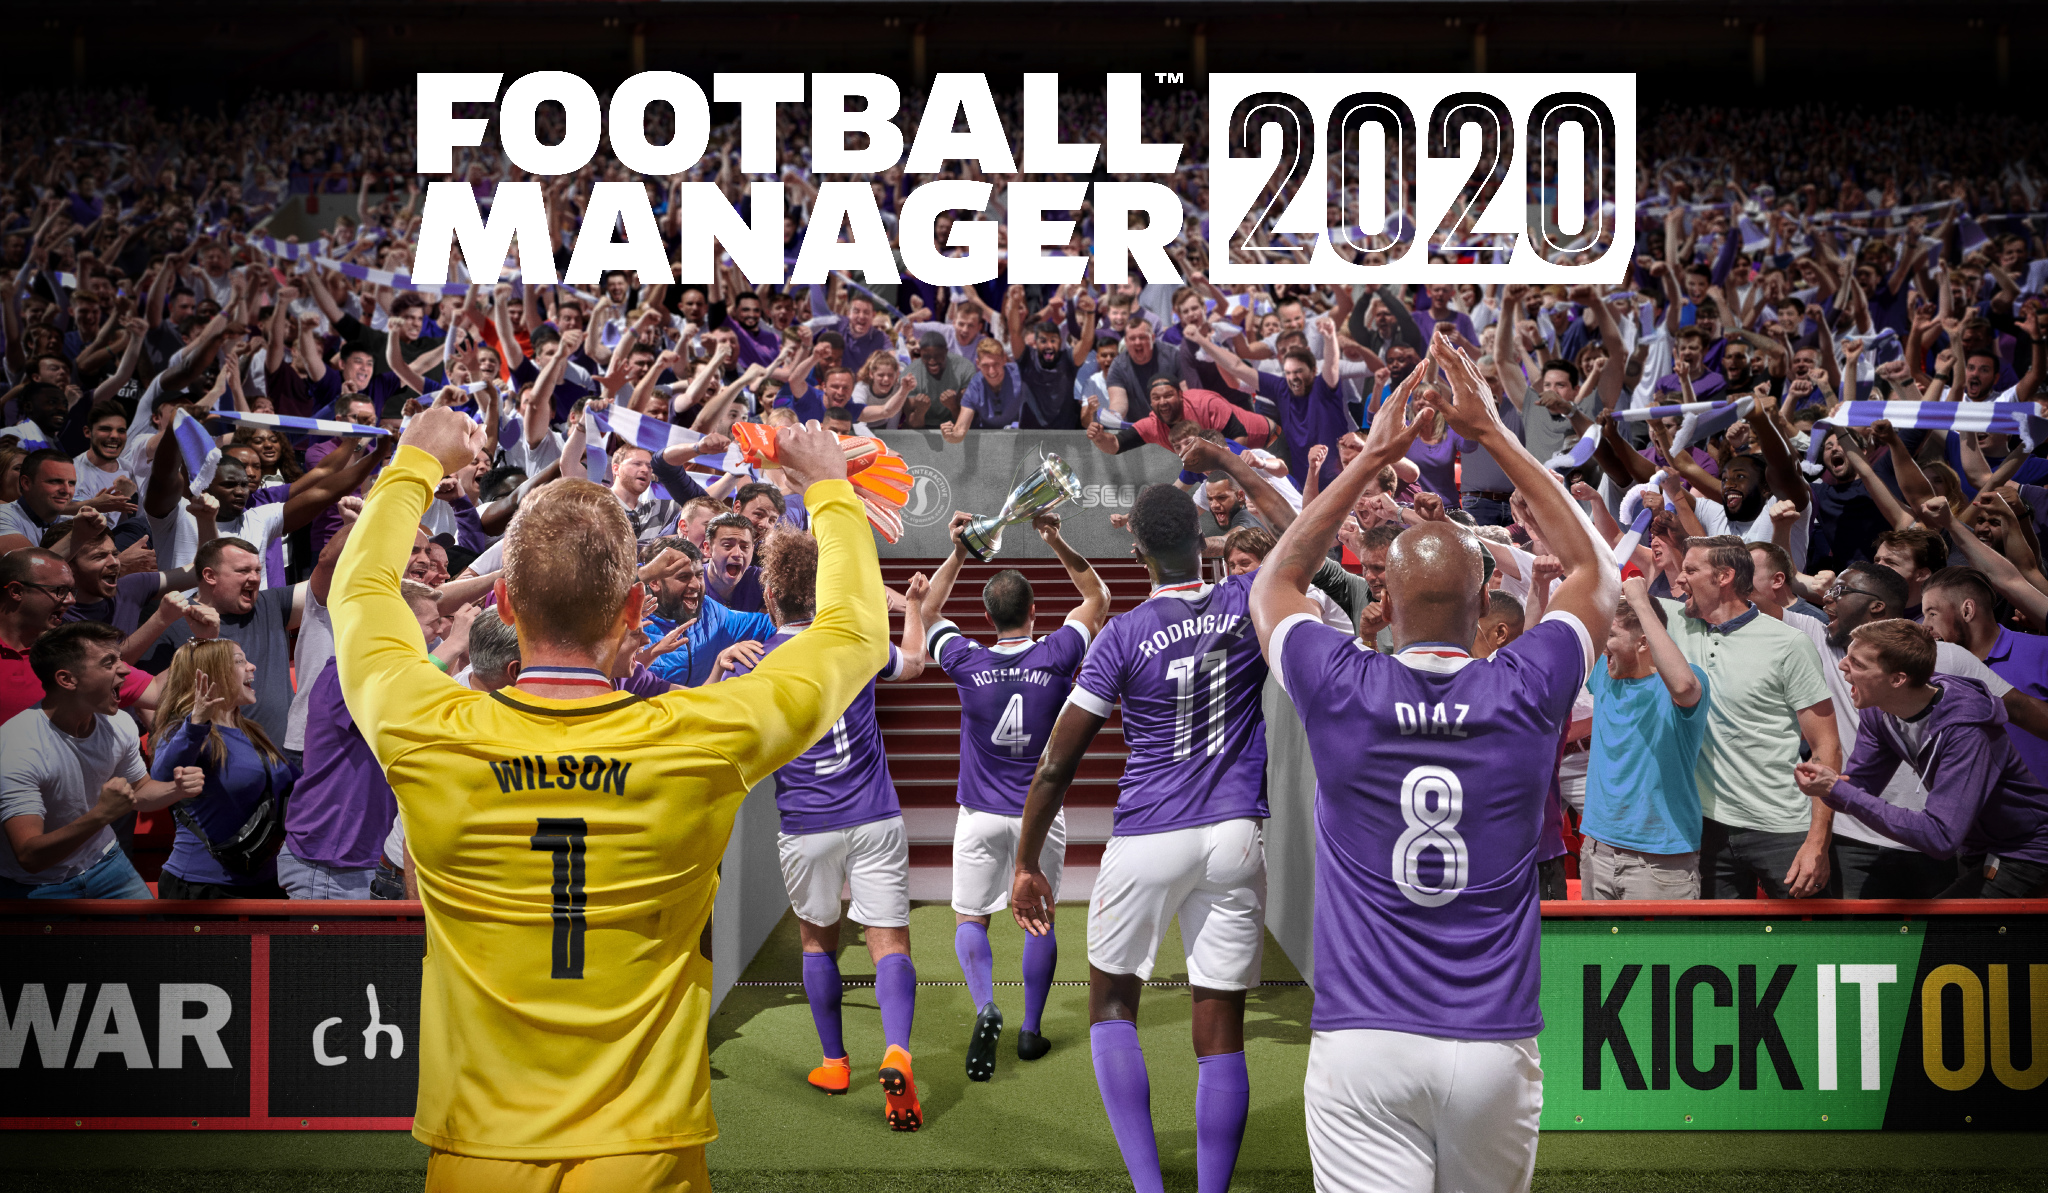 Annunciato Football Manager 2020 anche per Stadia, su Switch si continua con Touch